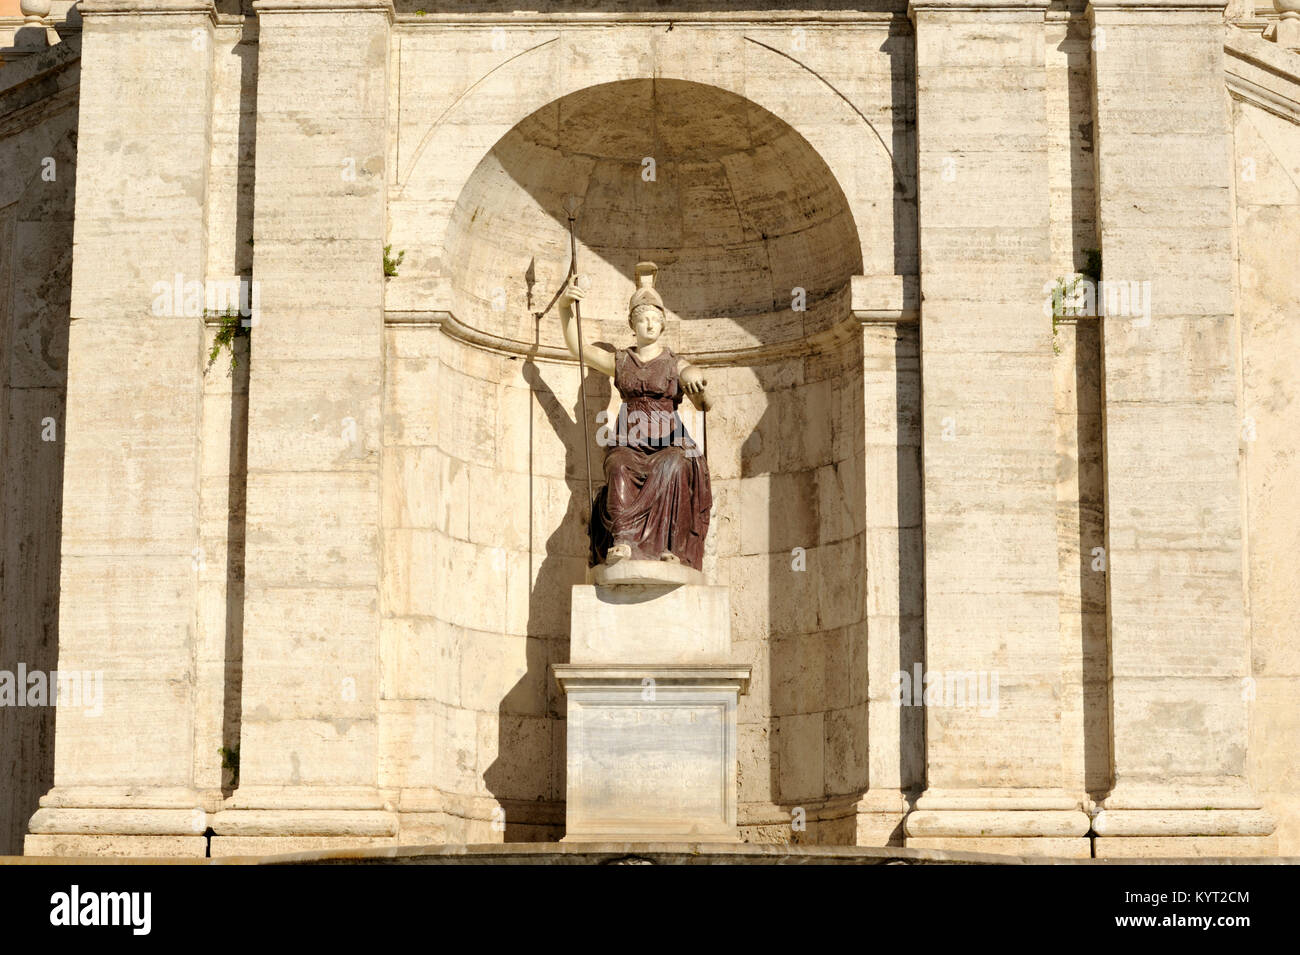 Italie, Rome, Piazza del Campidoglio, Palazzo Senatorio, statue de la déesse romaine Roma, à l'origine statue de Minerva (1er siècle après J.-C.) Banque D'Images